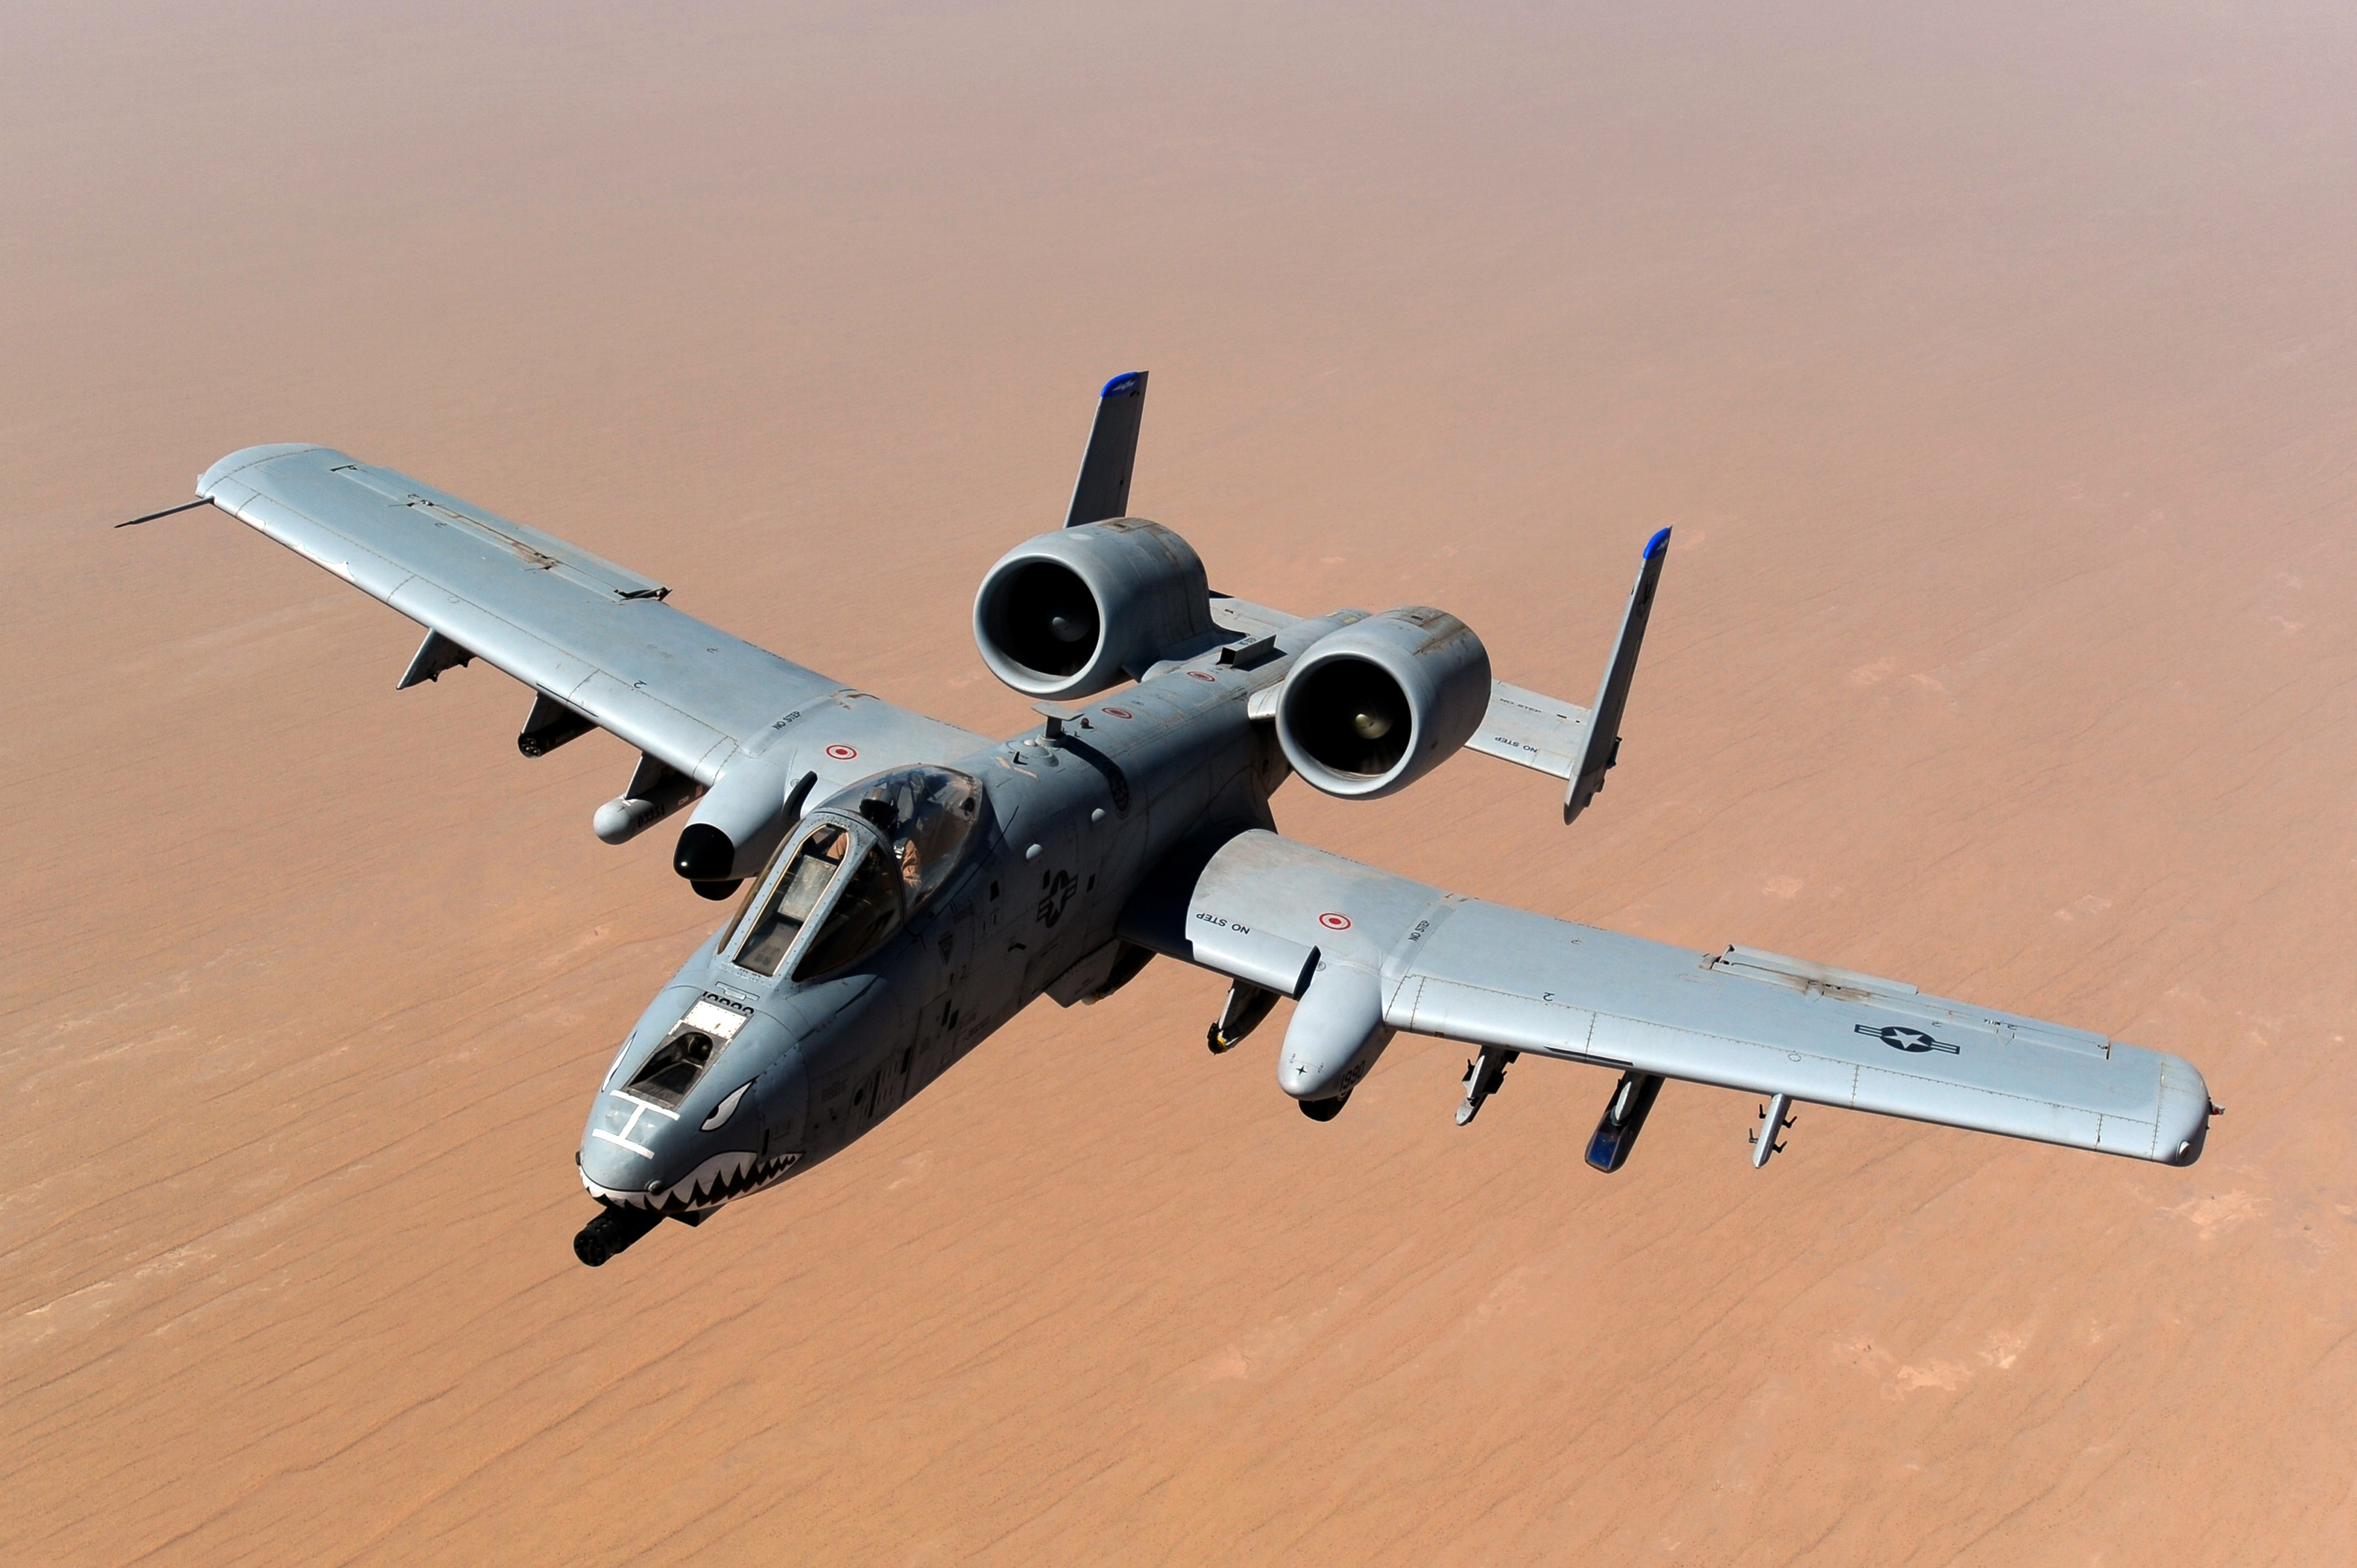 USAF_A-10_Thunderbolt_II_after_taking_on_fuel_over_Afghanistan.jpg